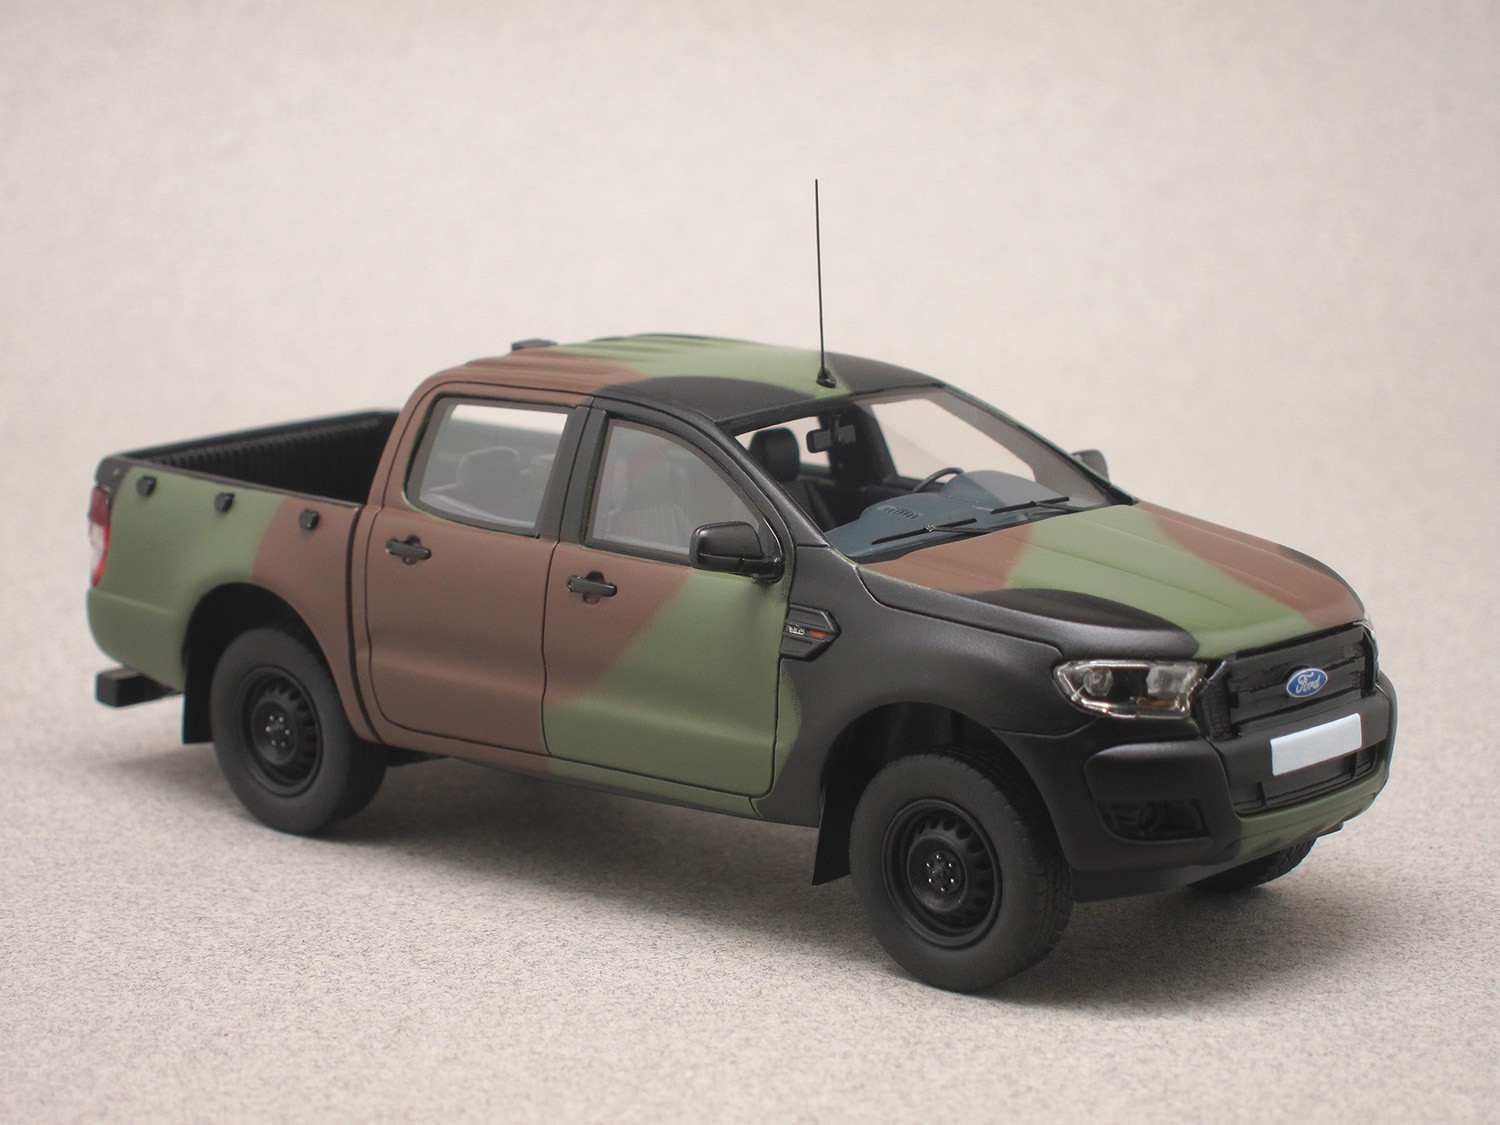 Ford Ranger 2016 military NATO (Alarme) 1:43